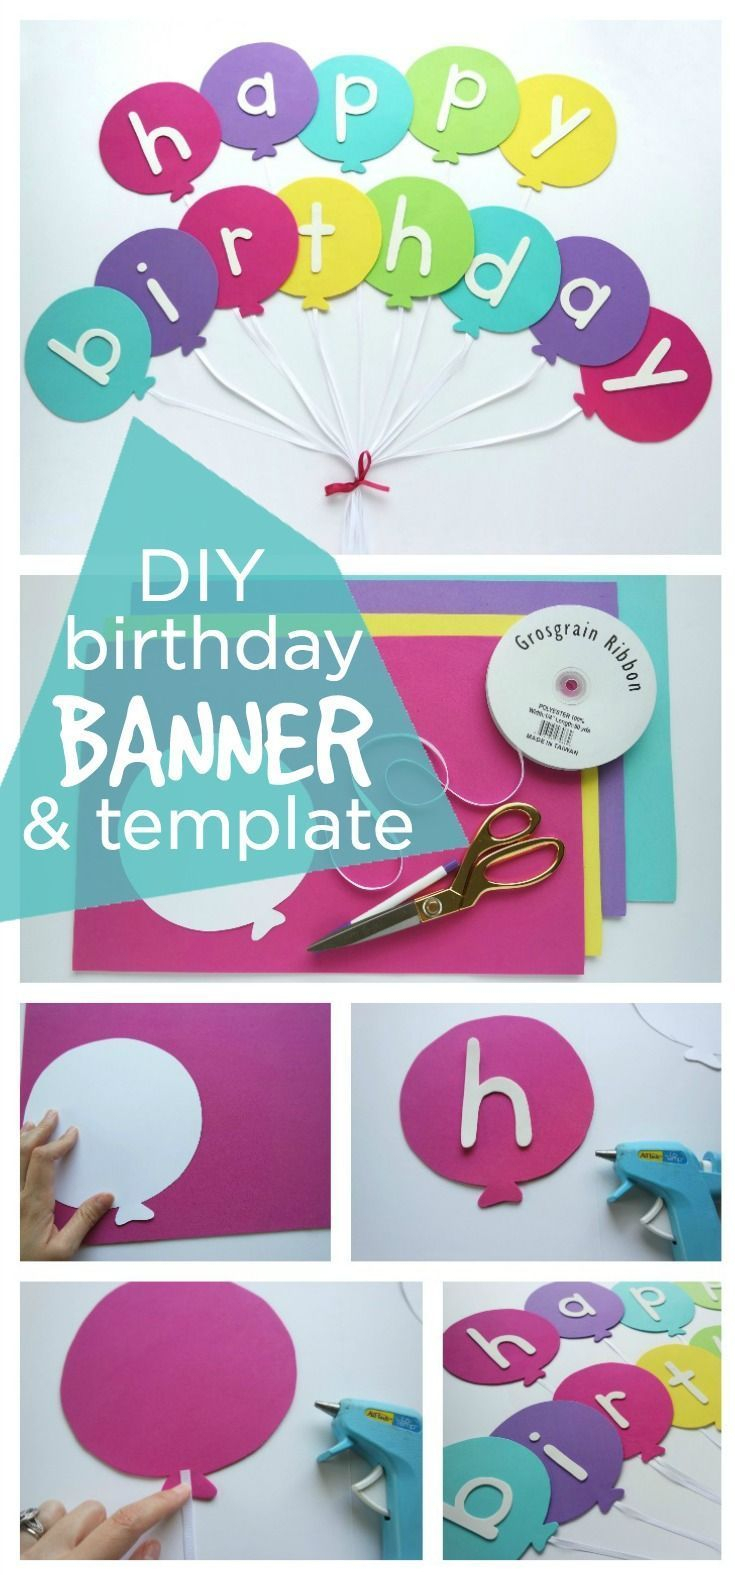 Happy Birthday Banner Diy Template | Diy Party Ideas  Group Inside Diy Birthday Banner Template